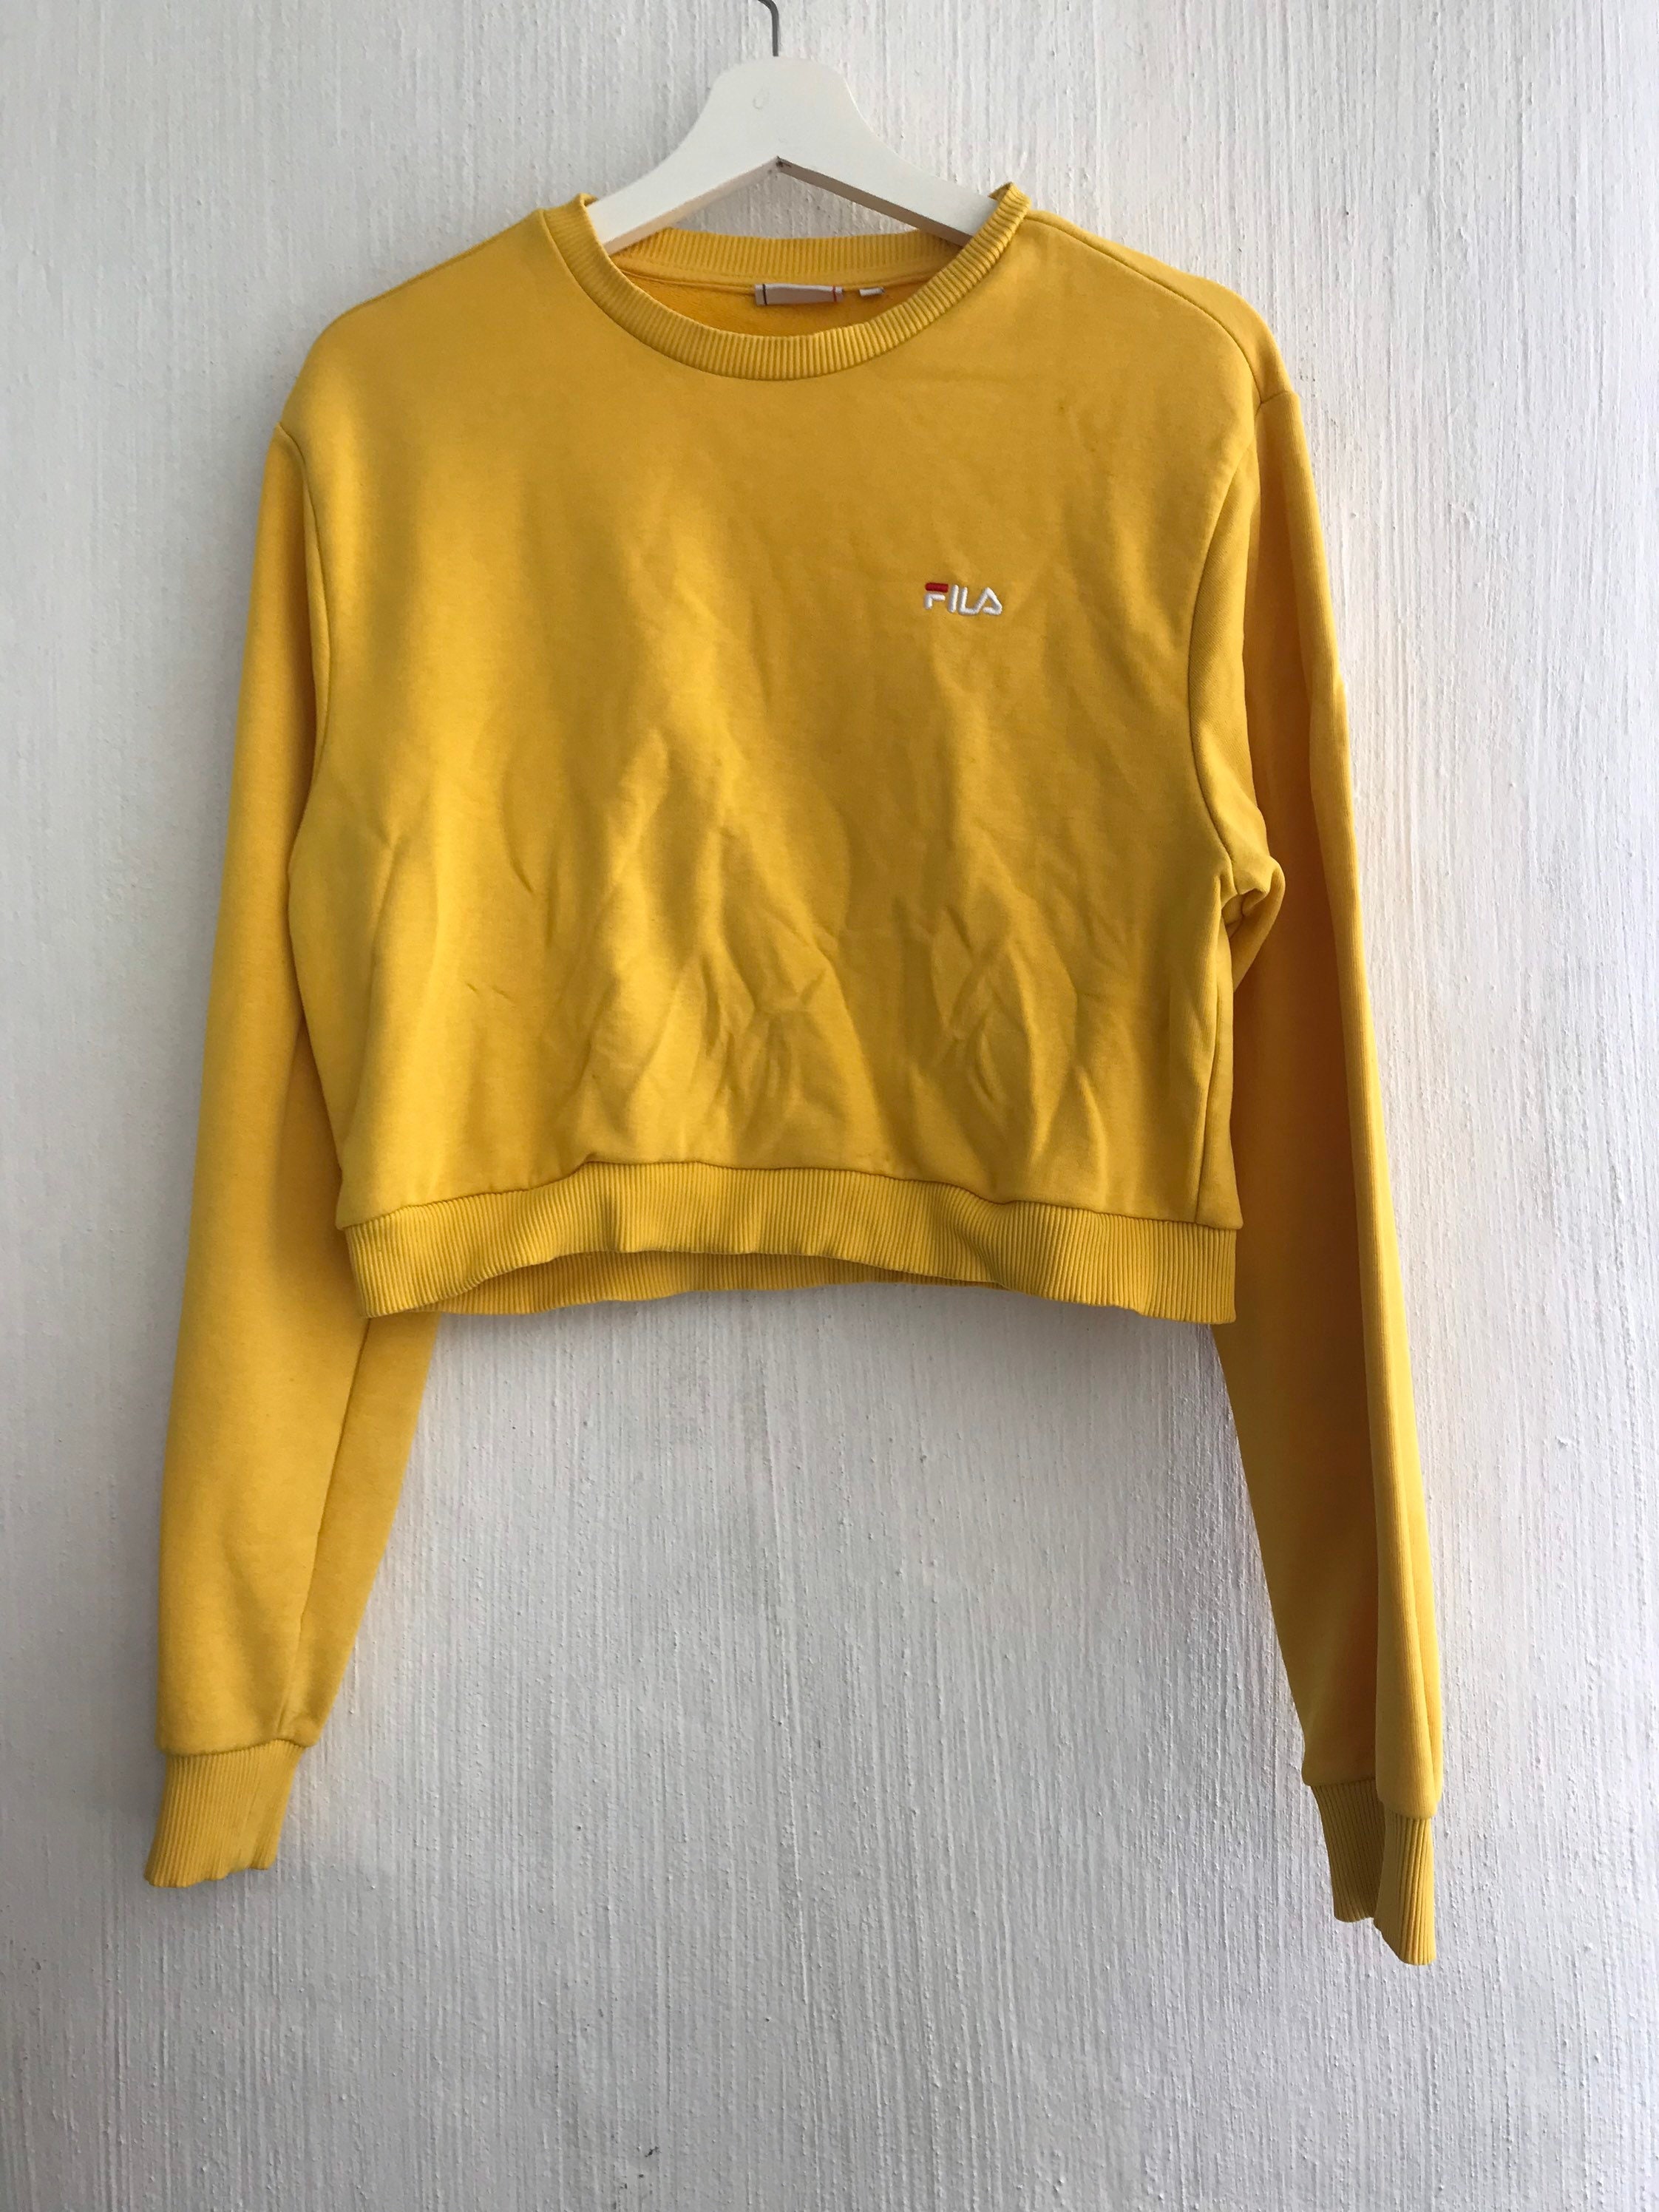 Cropped Fila Yellow Sweatshirt Size Xs - Etsy